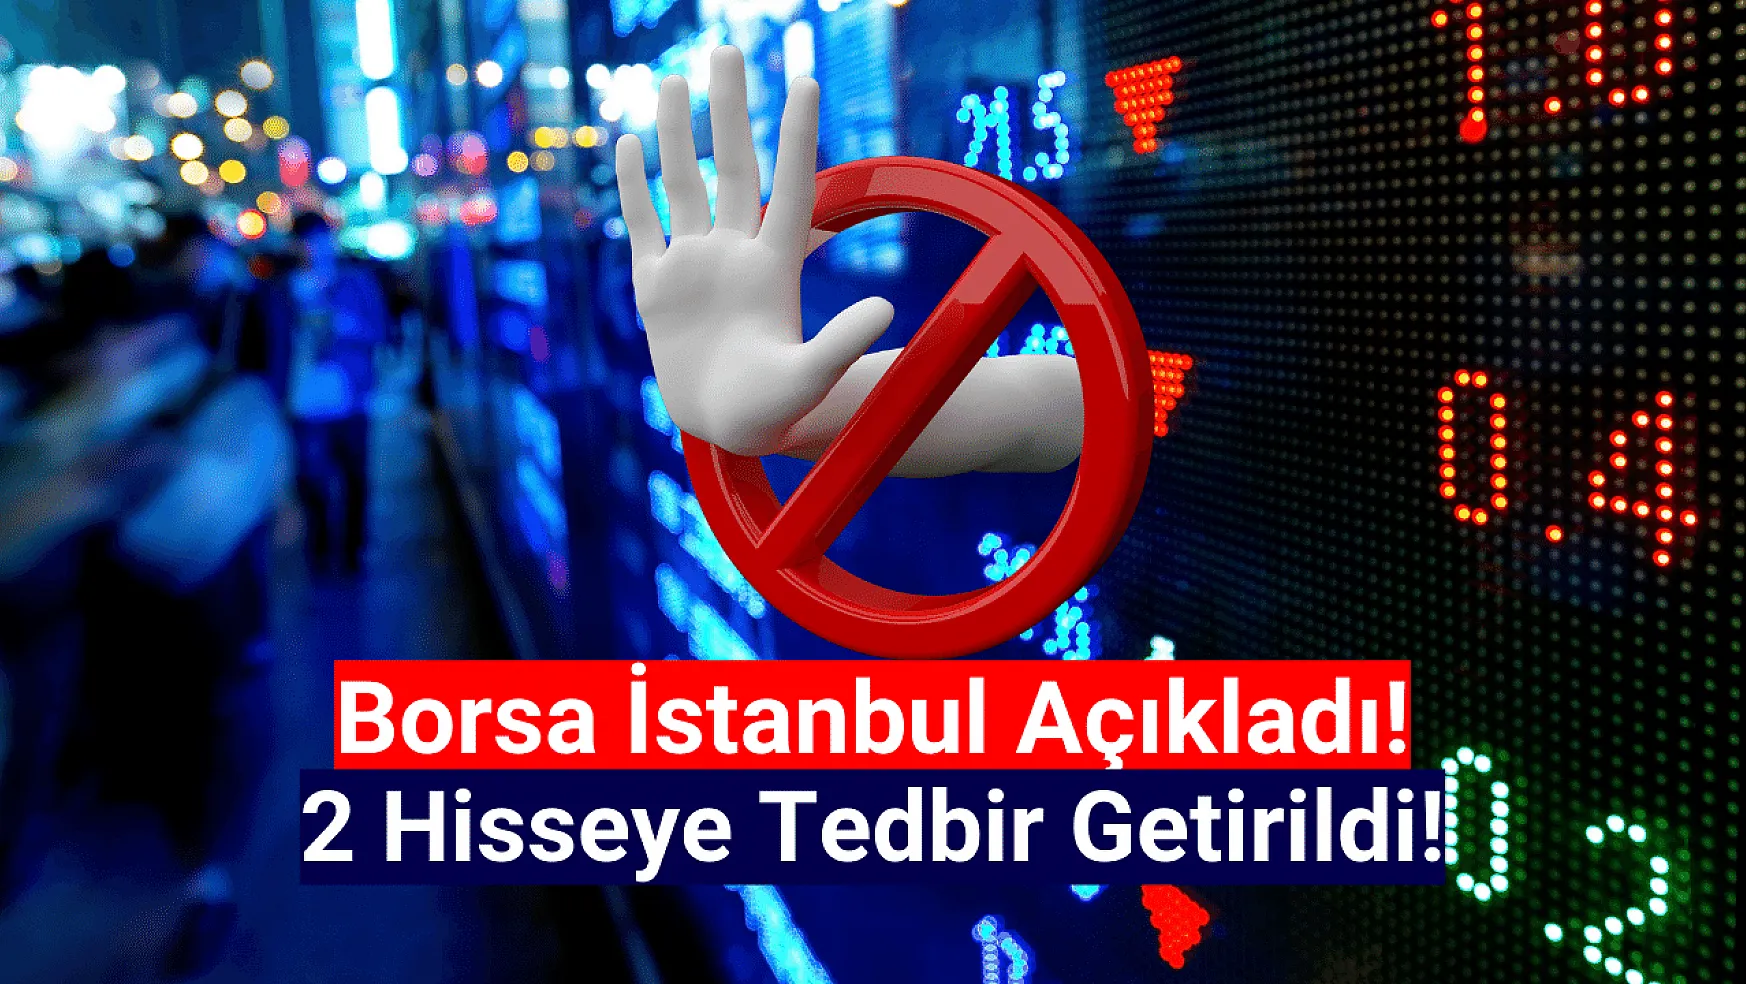 Borsa İstanbul 2 hisseye tedbir getirdi!